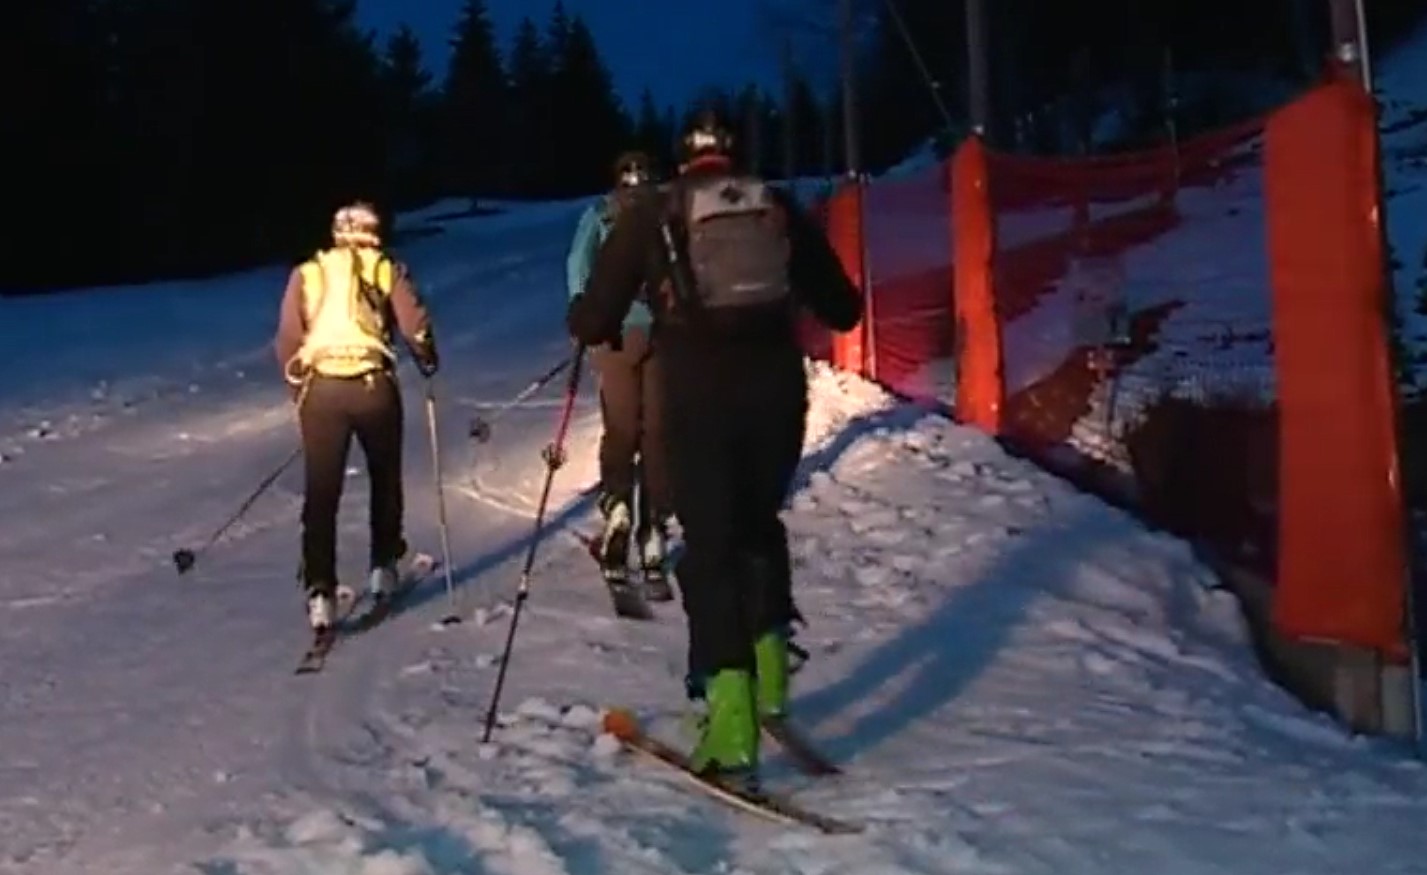 La práctica nocturna del esquí de montaña en pistas es peligrosa, Les Carroz prueba soluciones